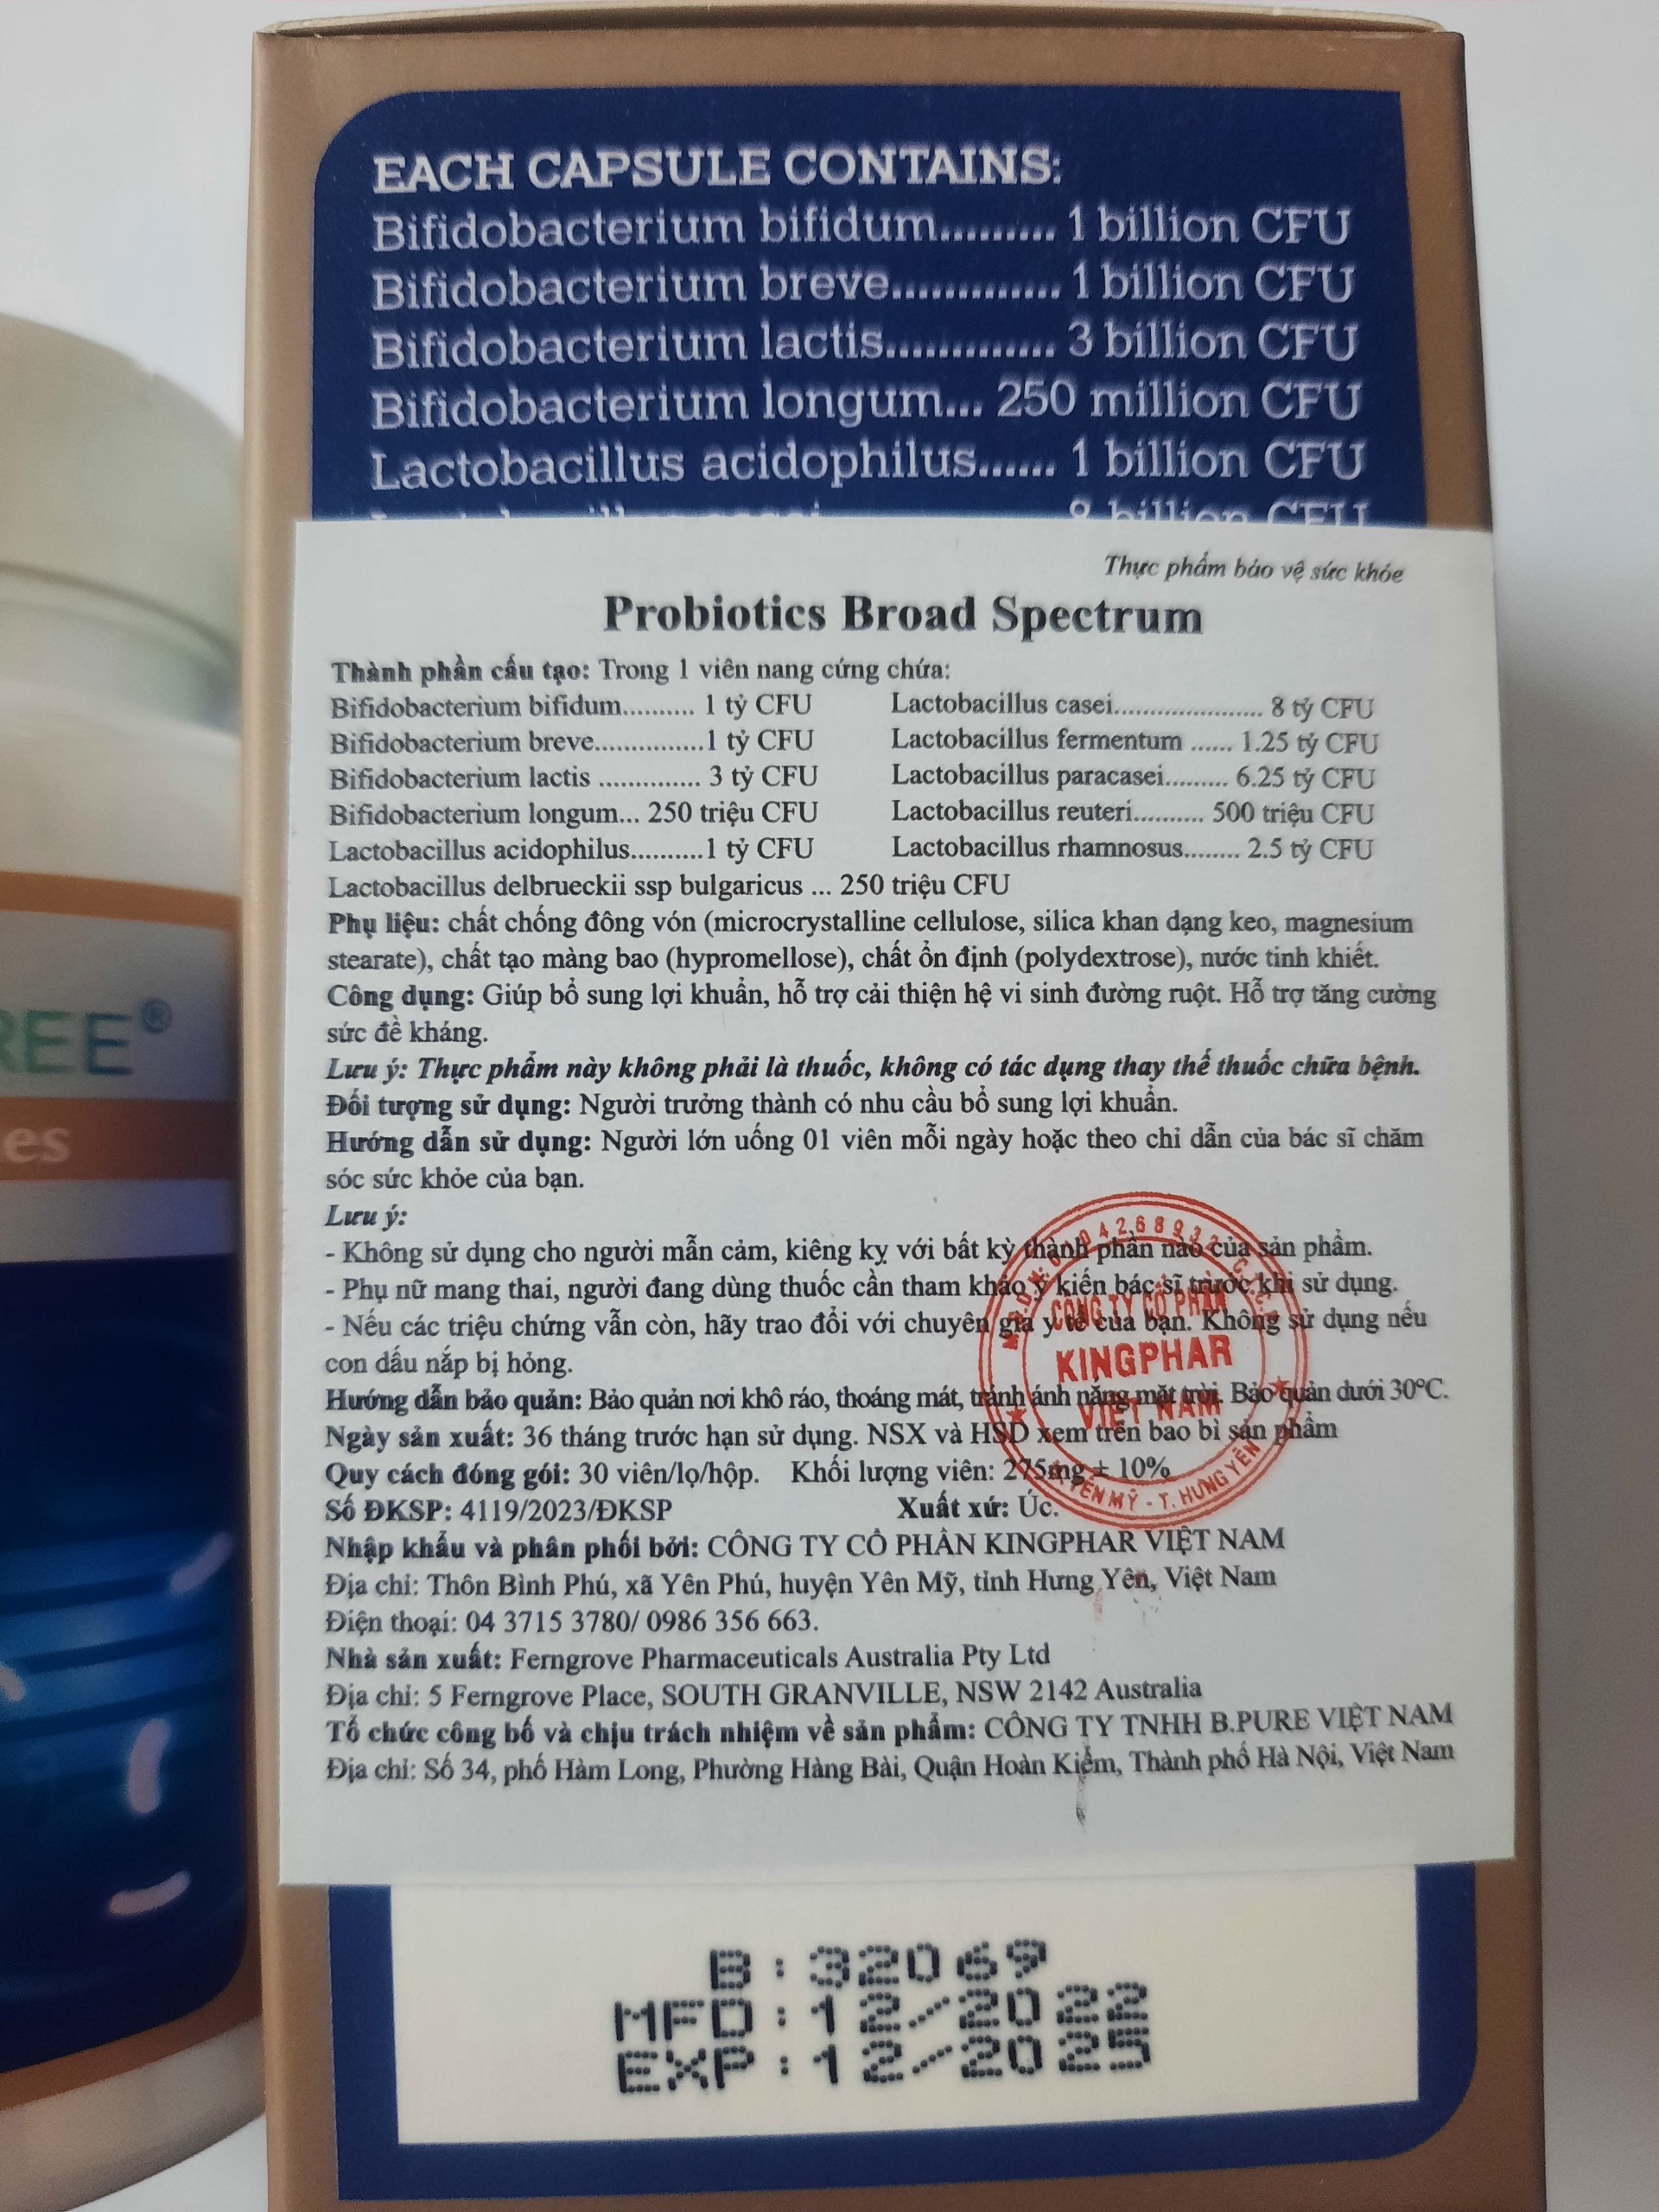 Viên uống Men vi sinh VITATREE Probiotics Broad Spectrum - Hộp 30 viên, nhập khẩu Úc